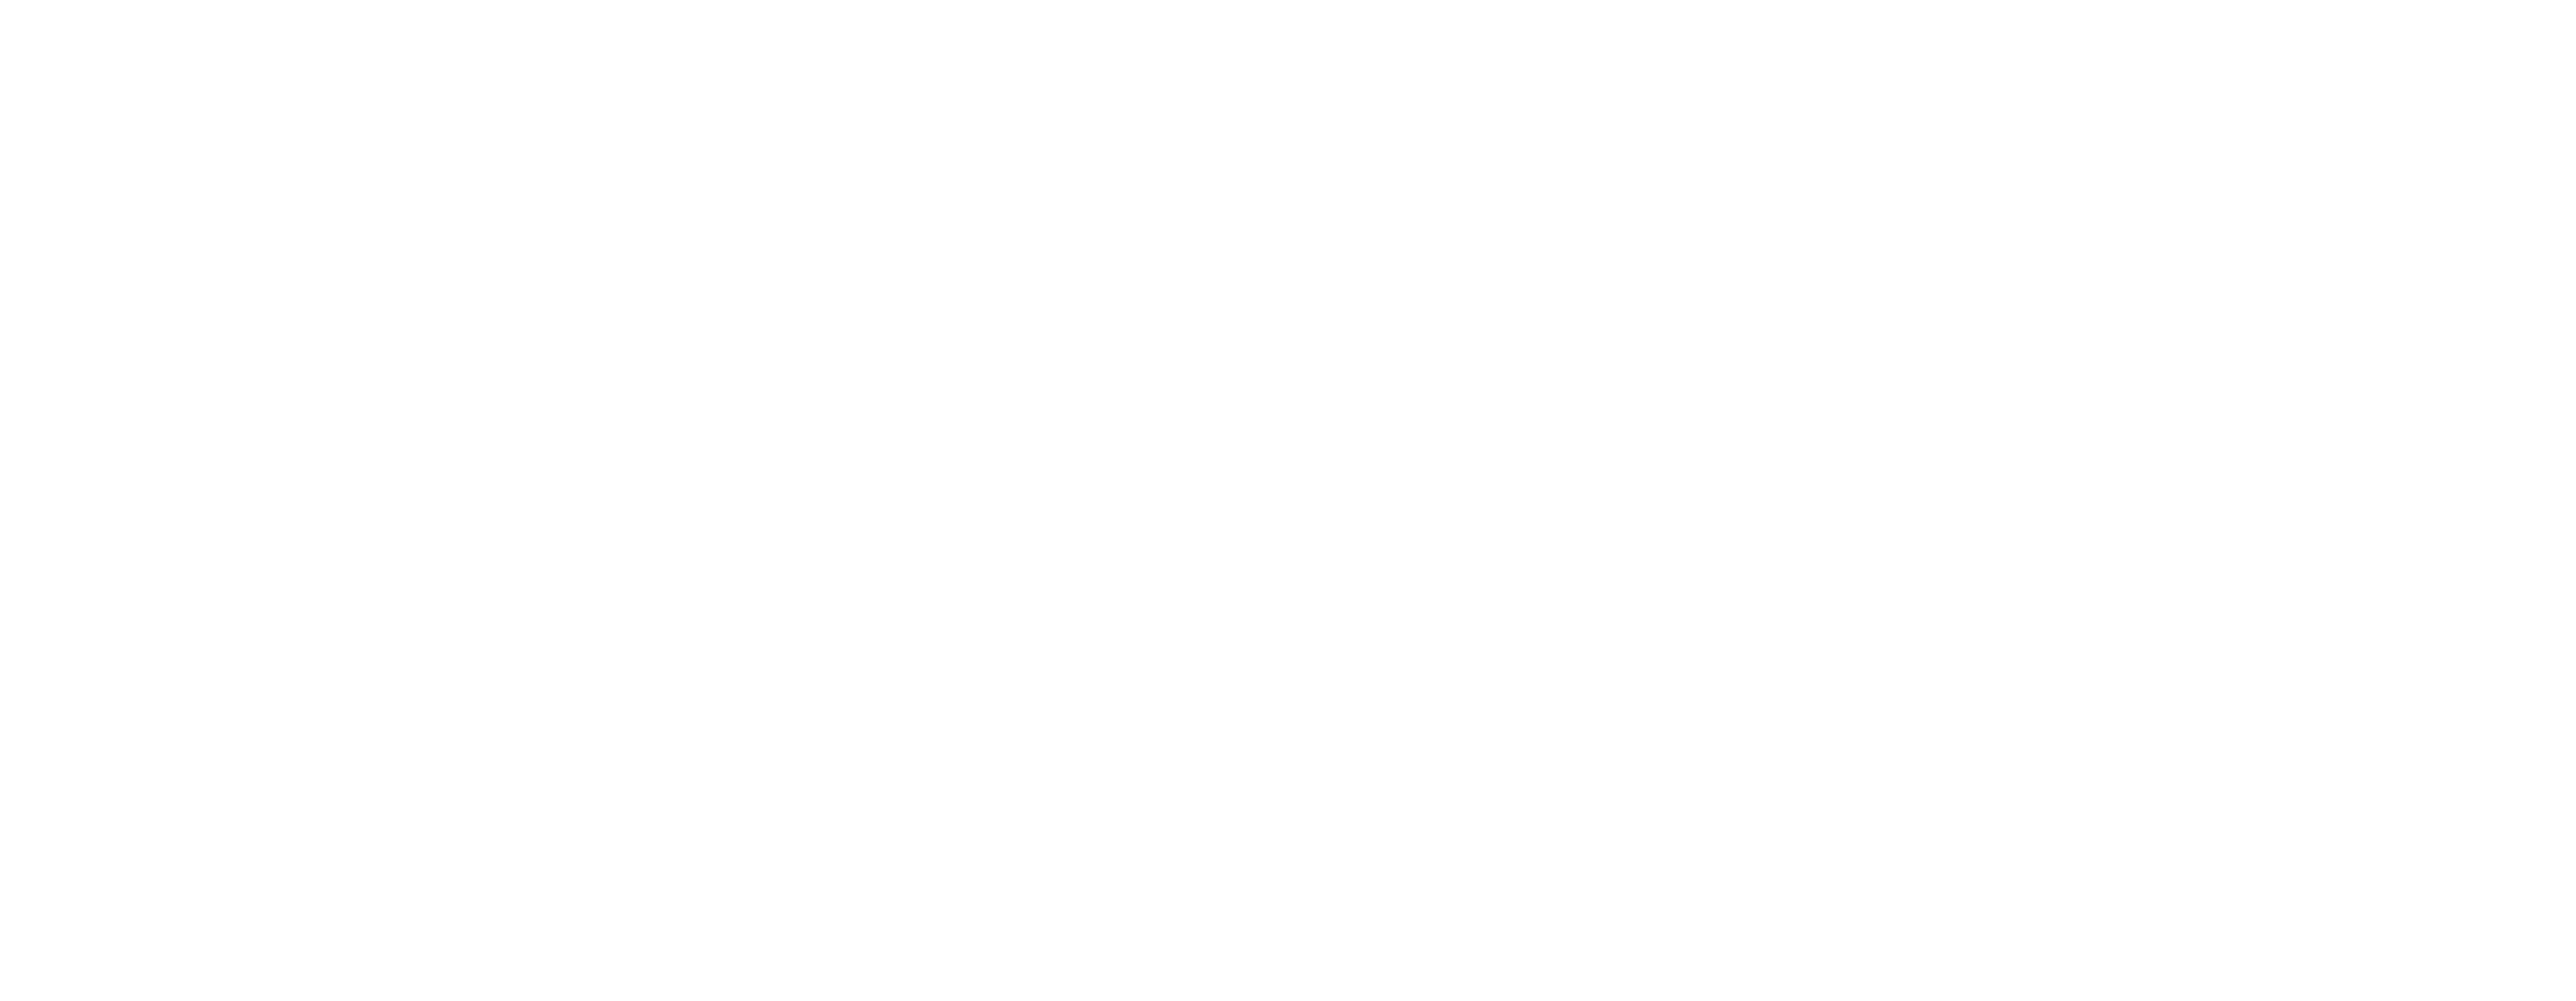 Radeon ProRender